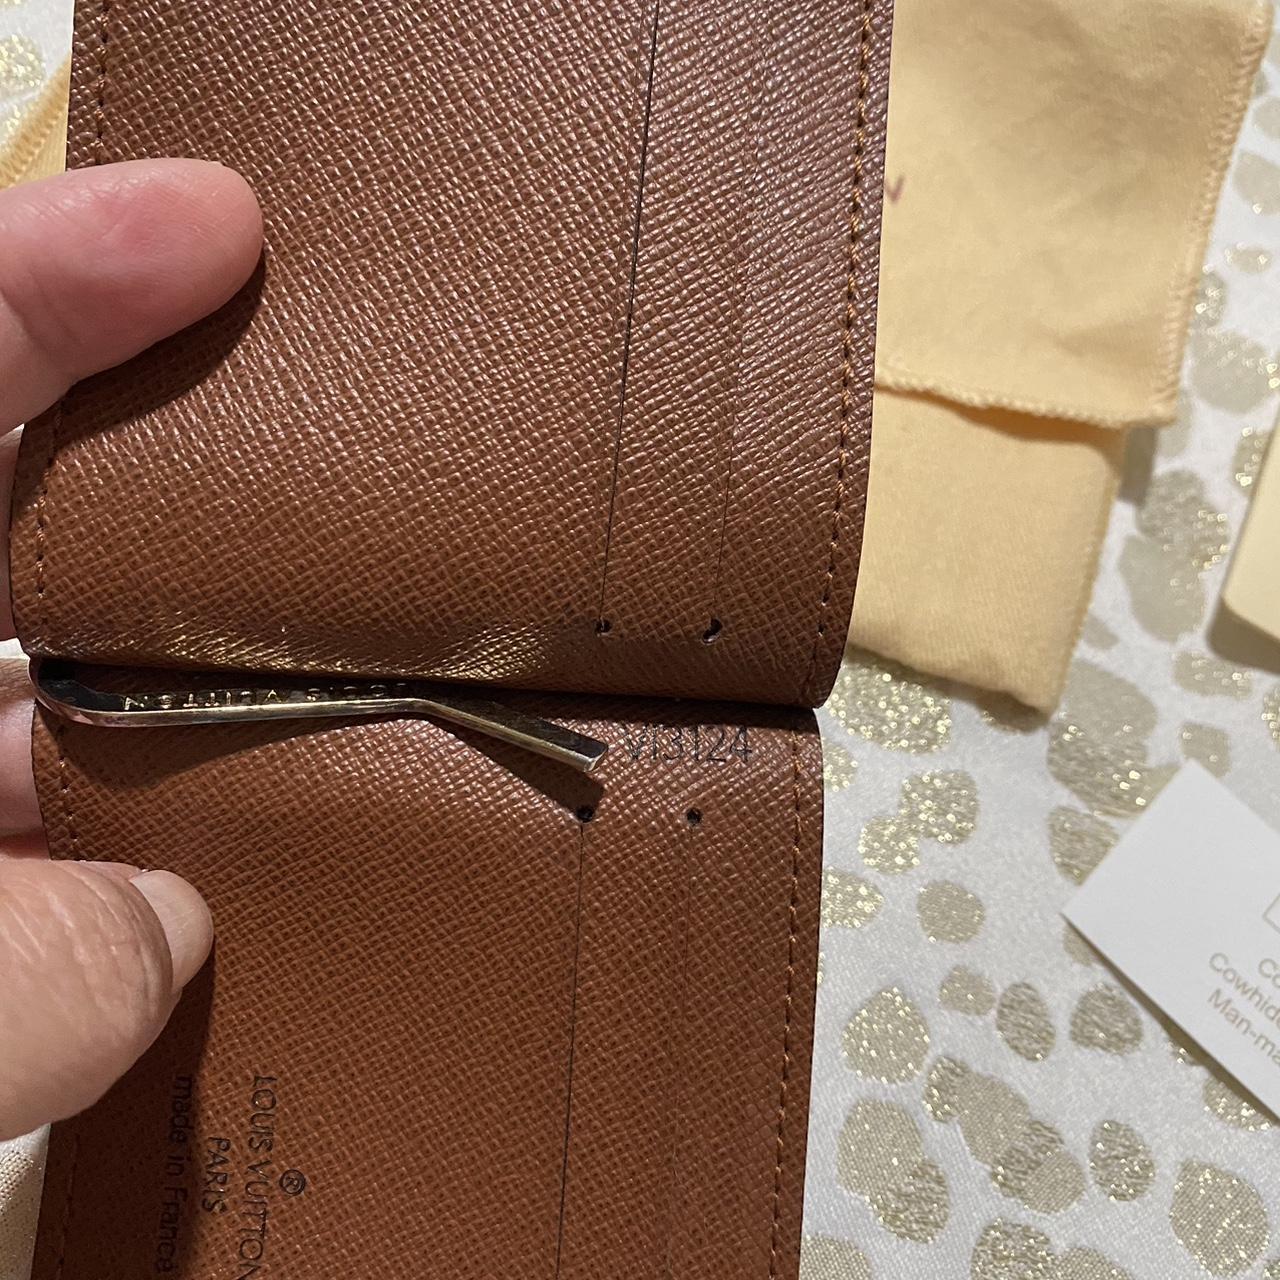 Louis Vuitton Money clip wallet with dust bag .